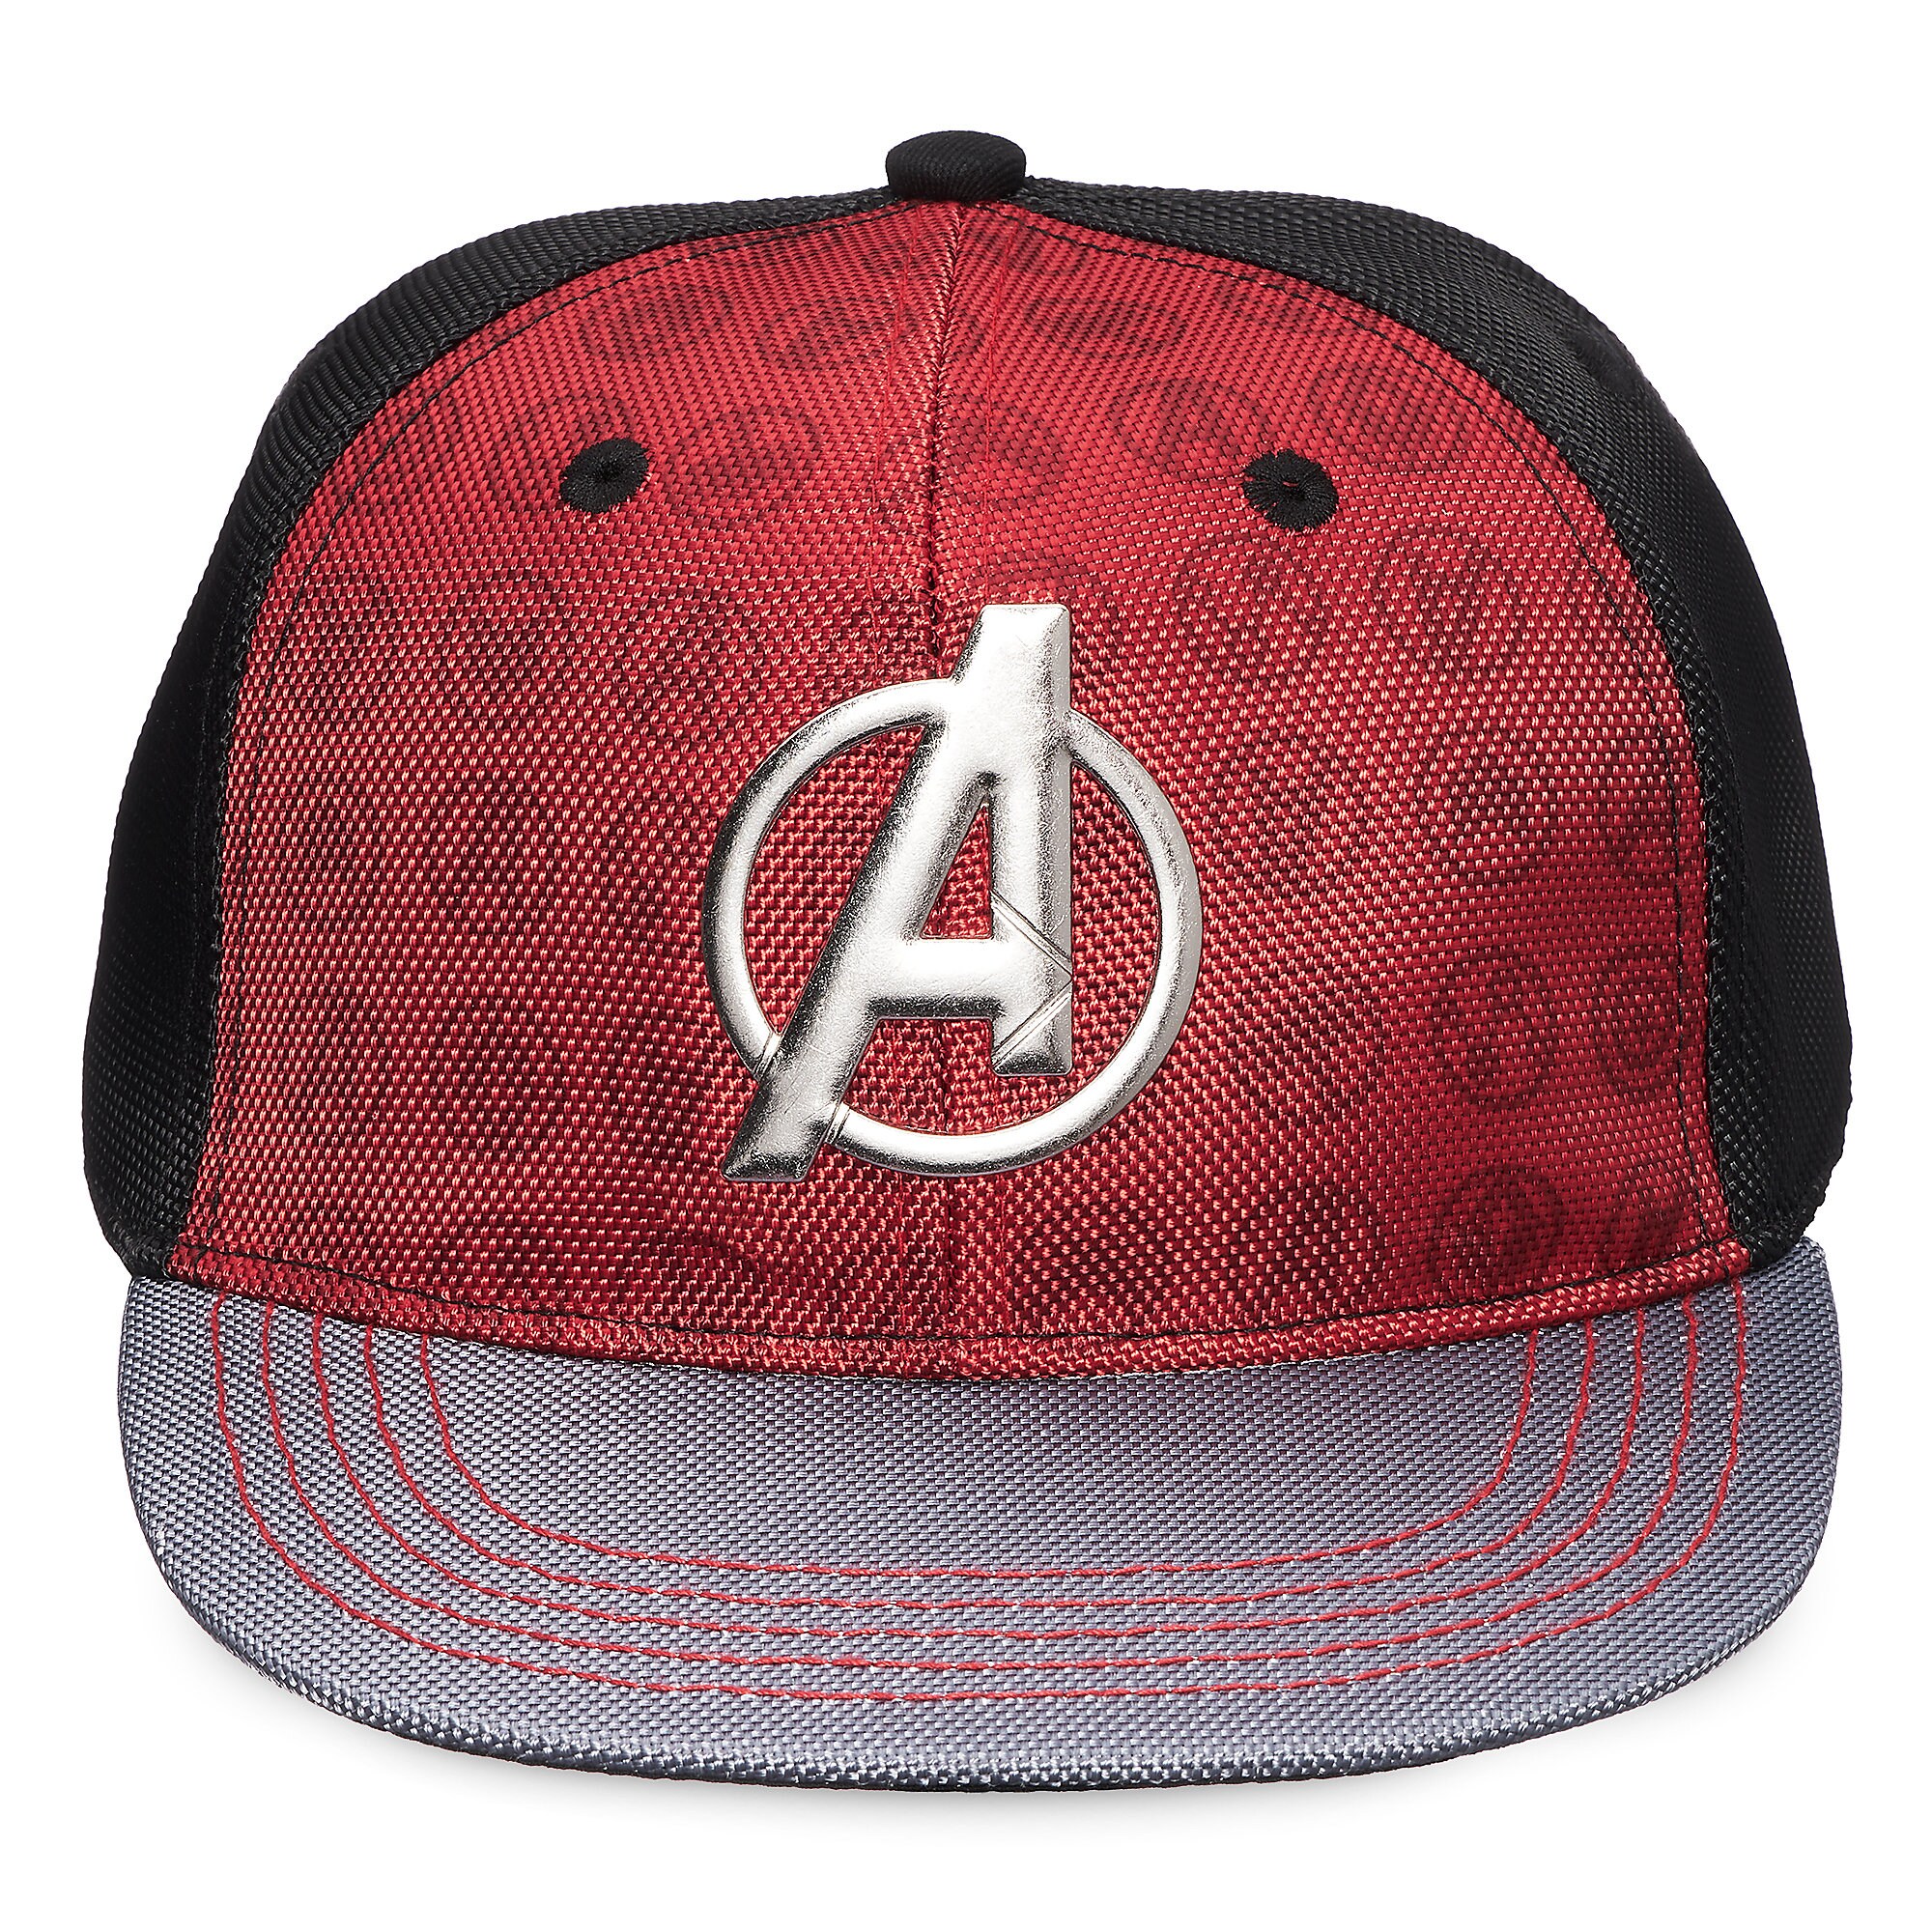 Avengers Baseball Cap for Boys